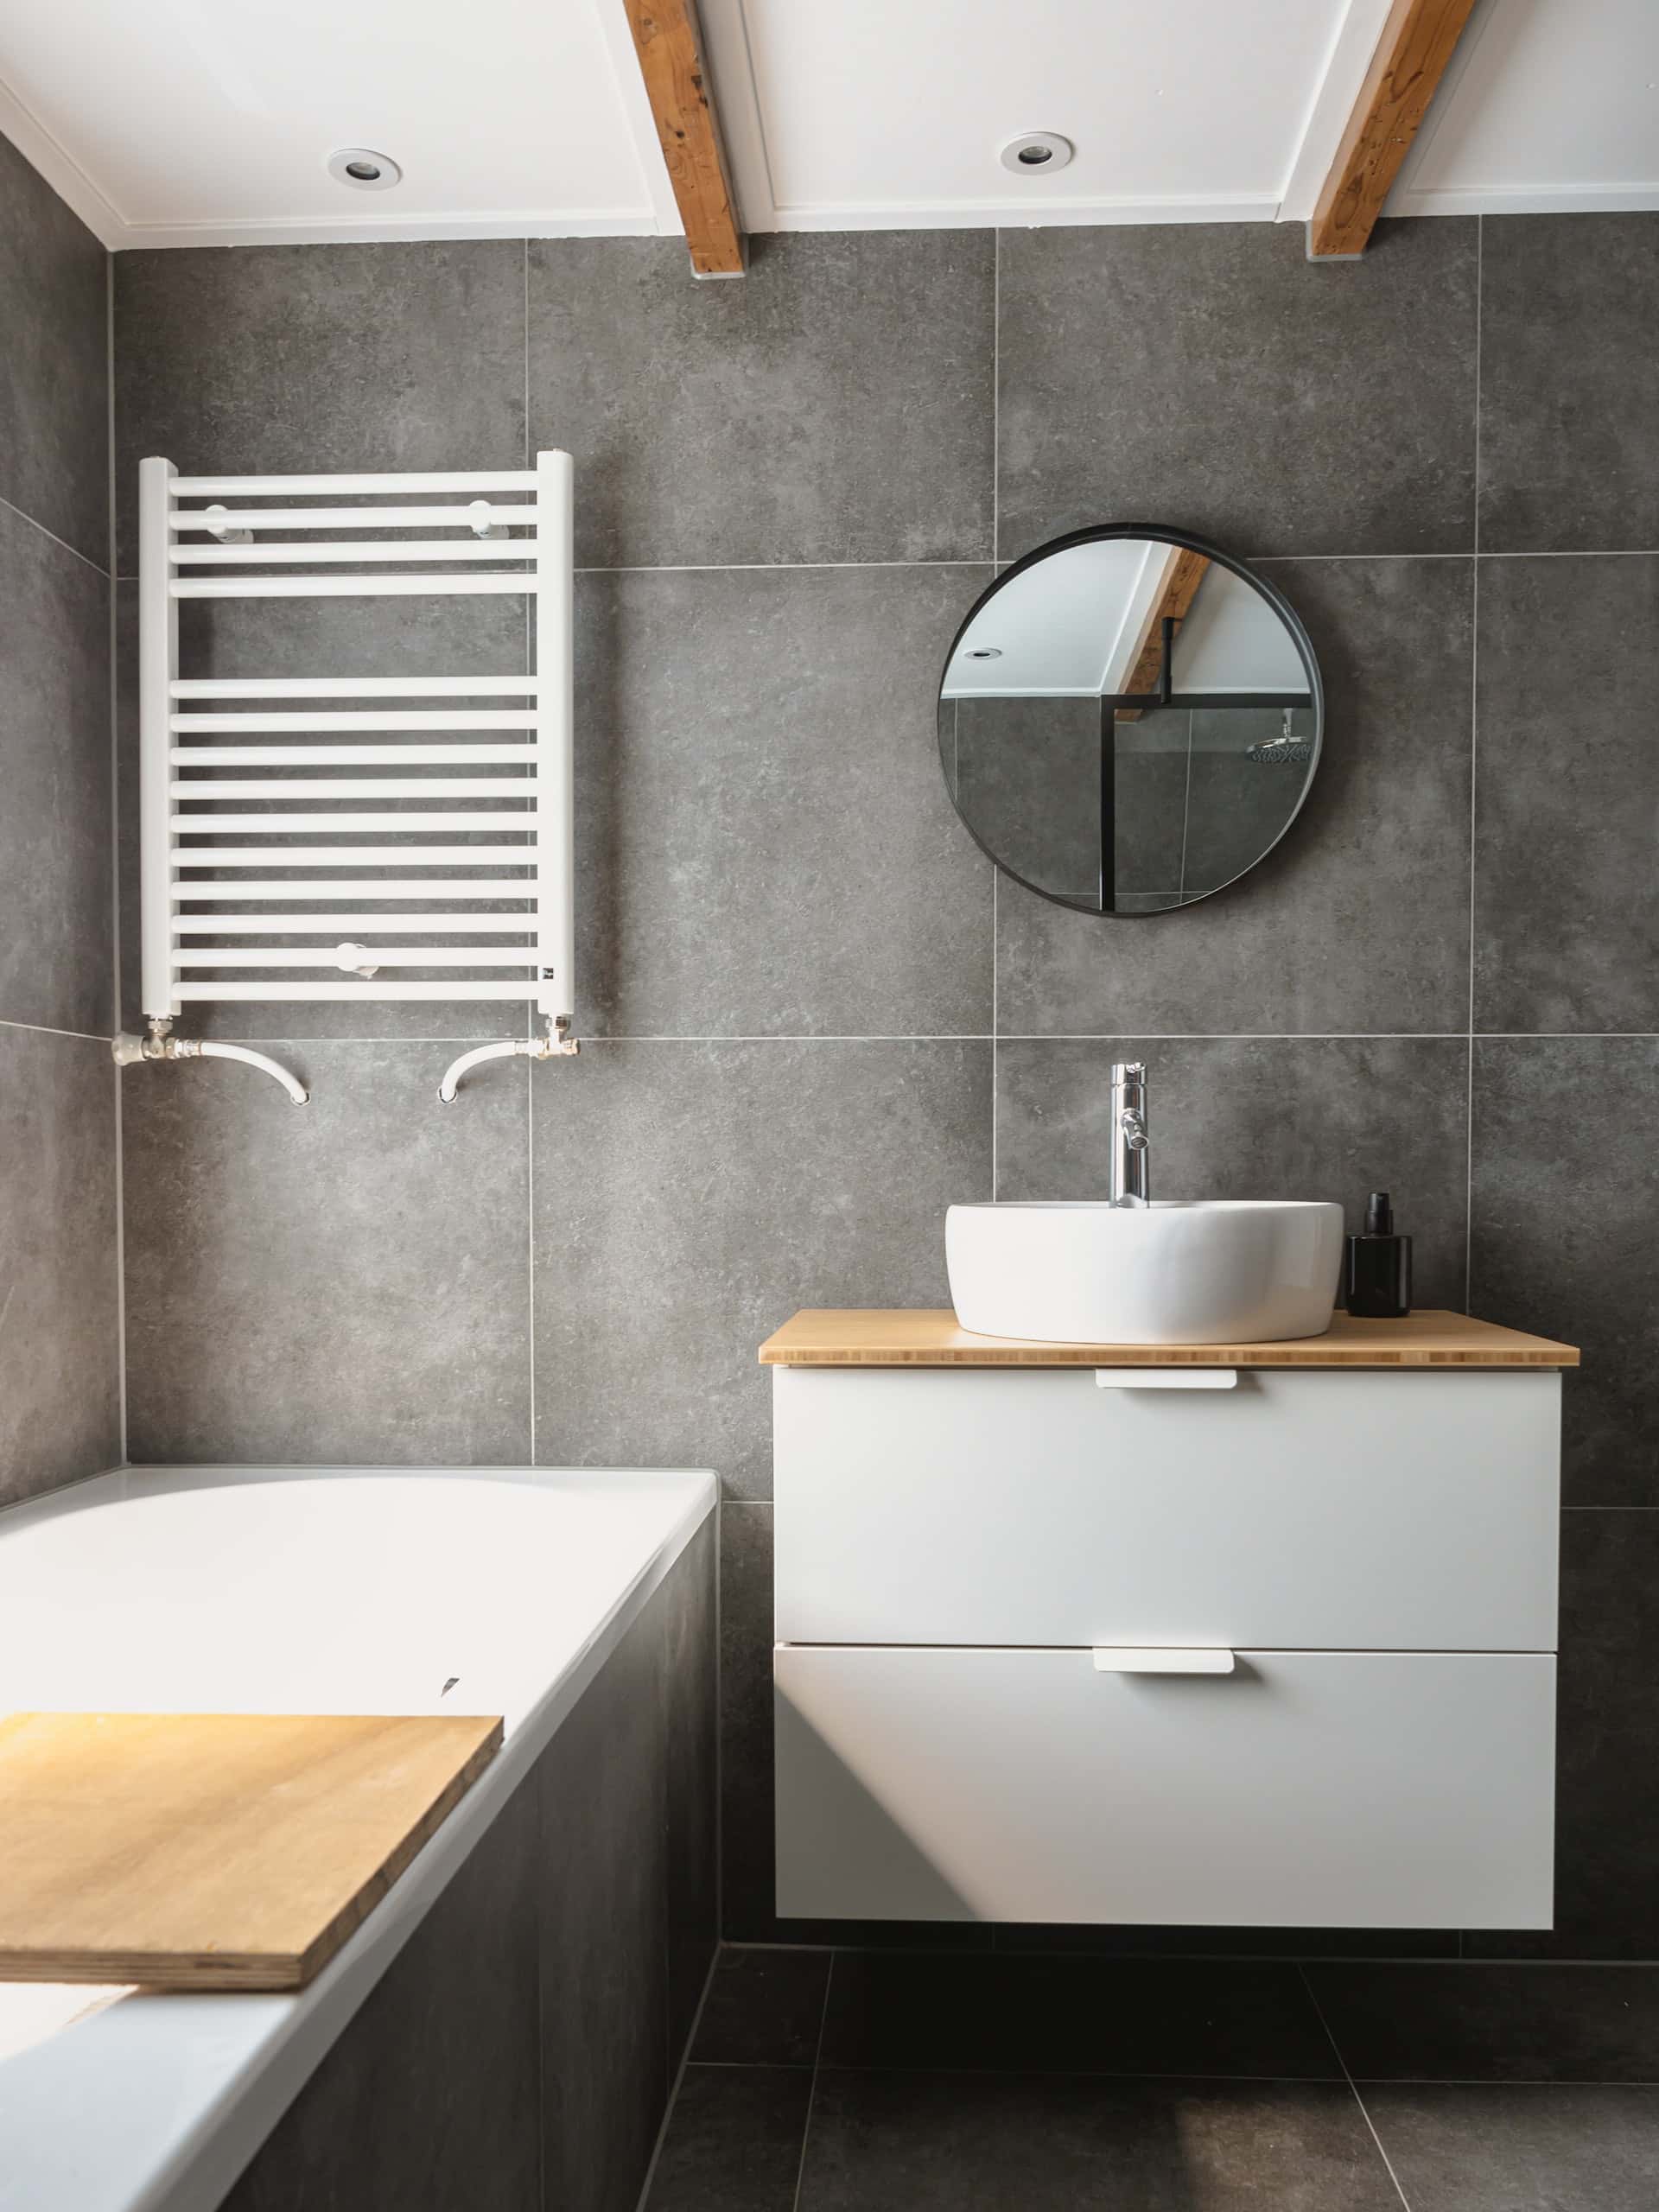 simply circular wash basin mirror designs